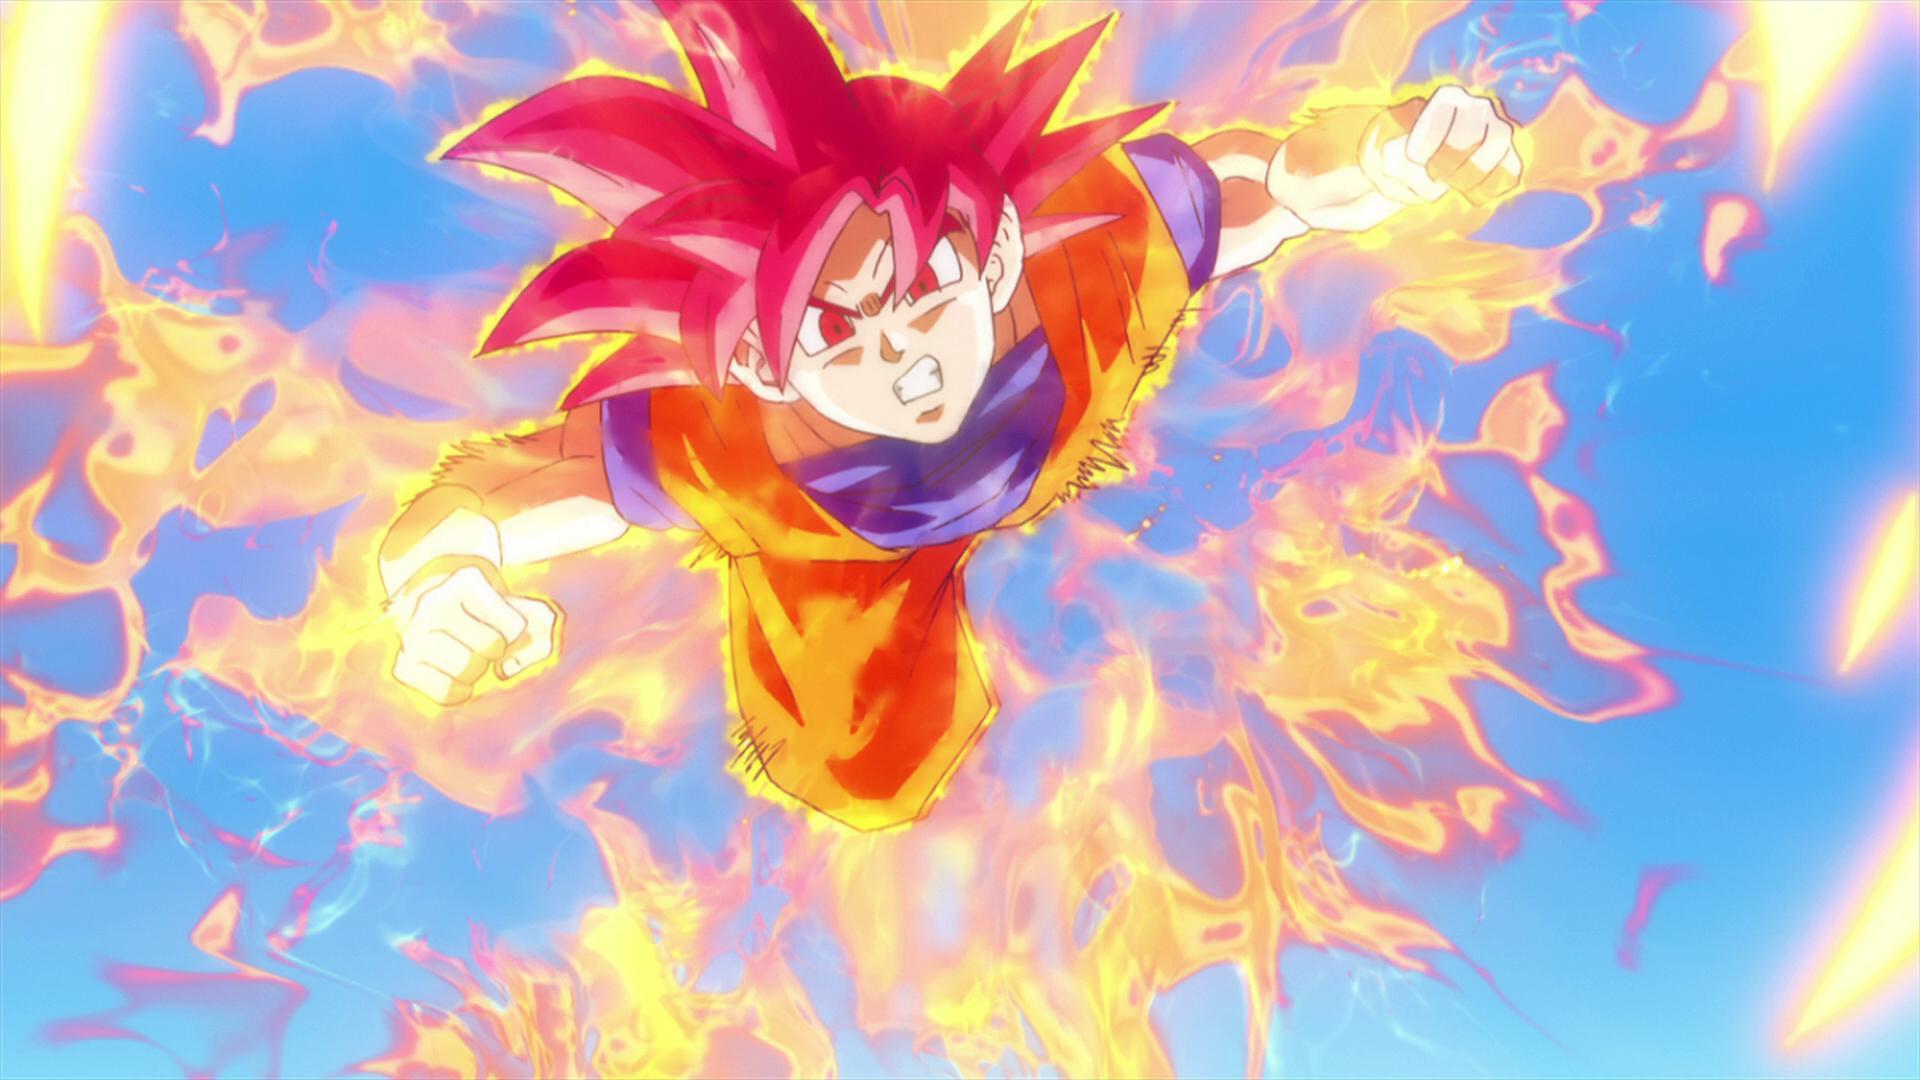 Goku Super Saiyan God 1080p Wallpaper. Dragon Ball